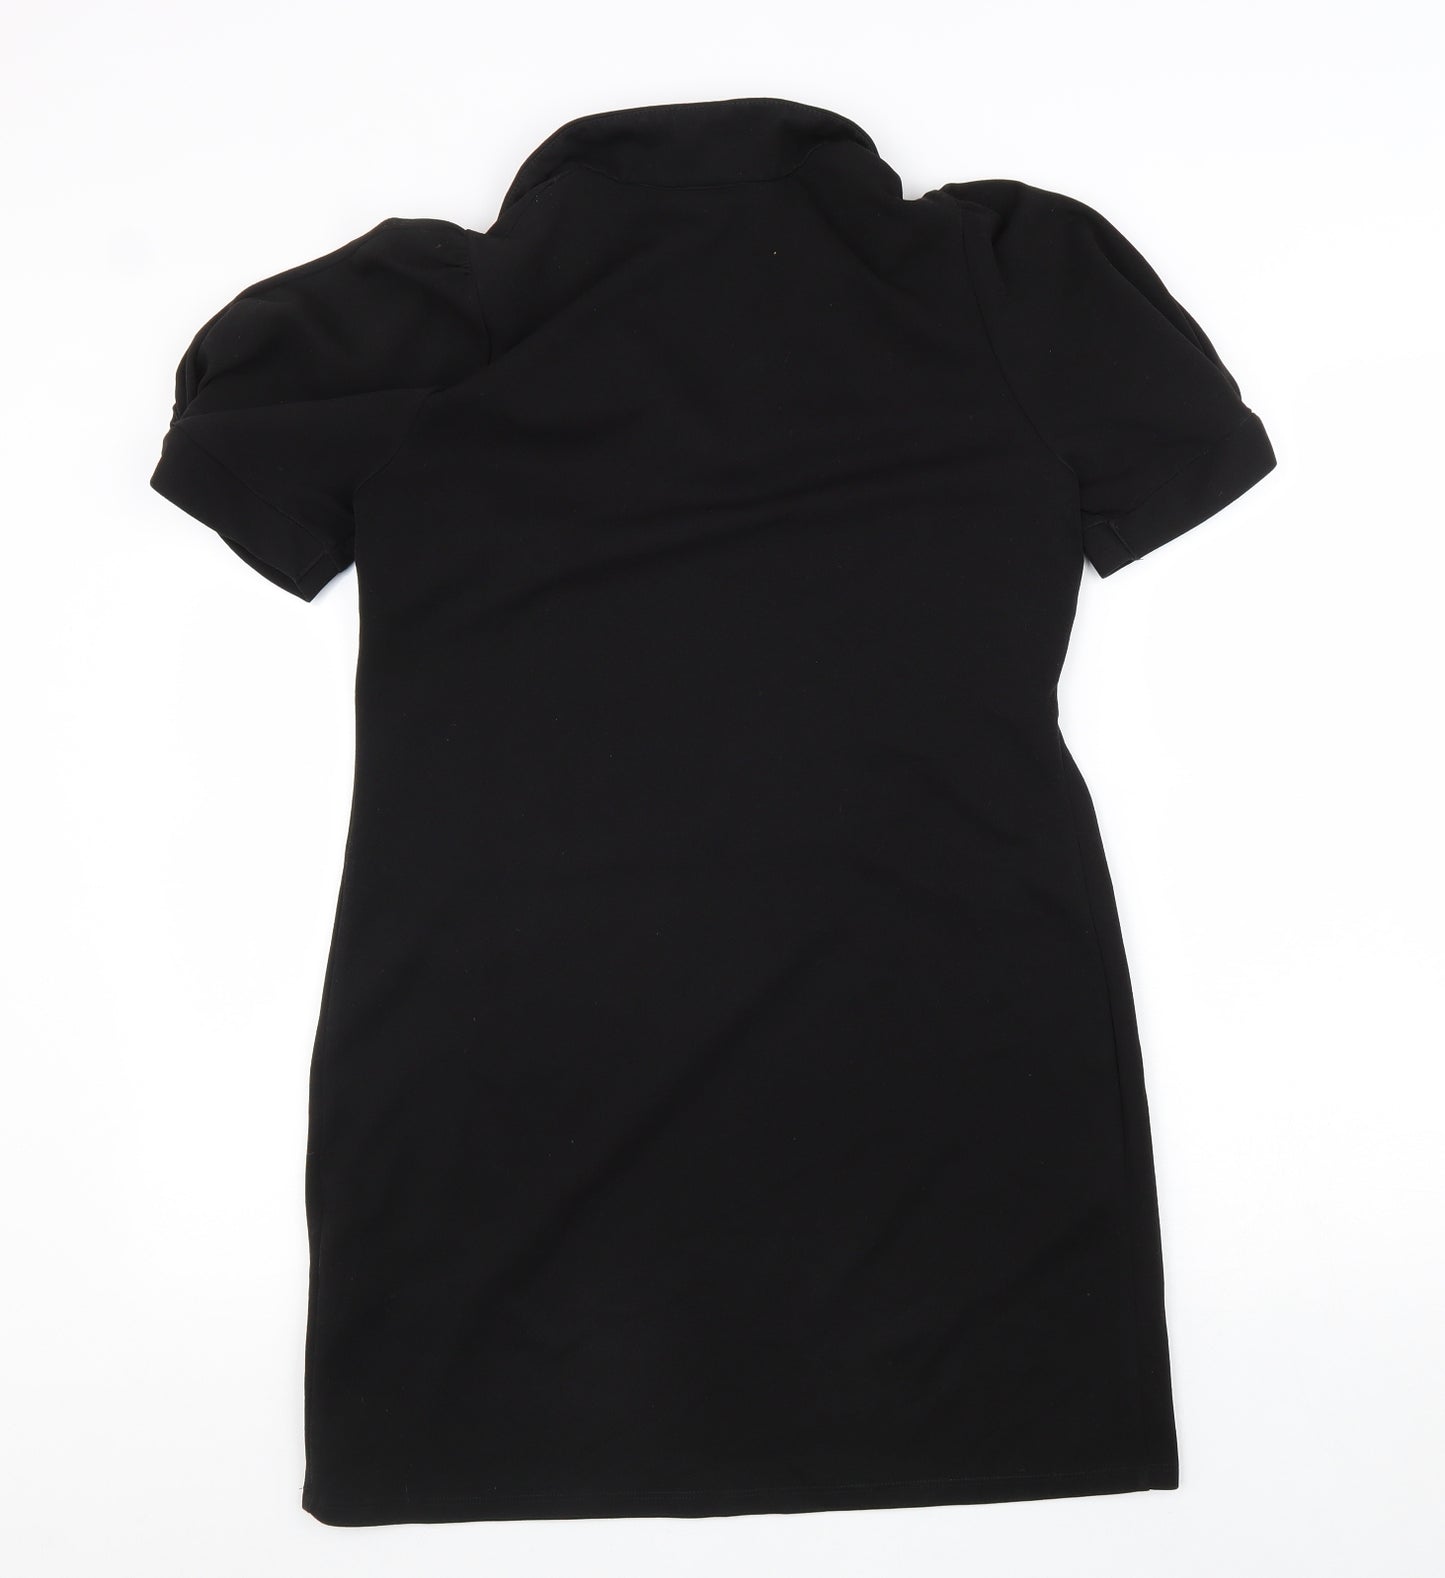 NAF NAF Womens Black Polyester A-Line Size S V-Neck Pullover